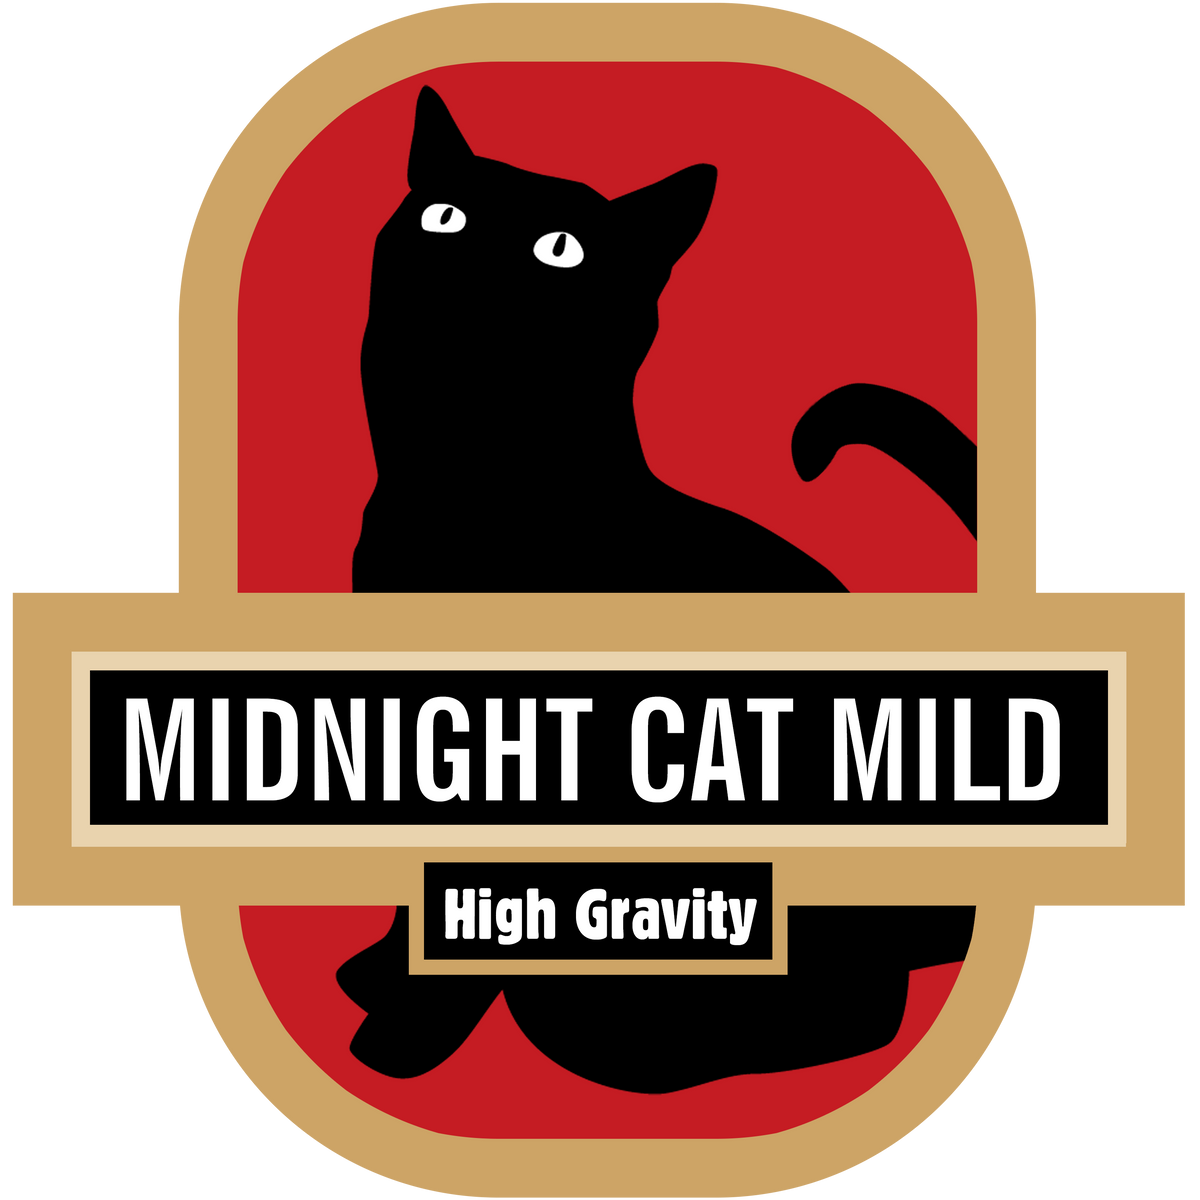 Midnight Cat Mild